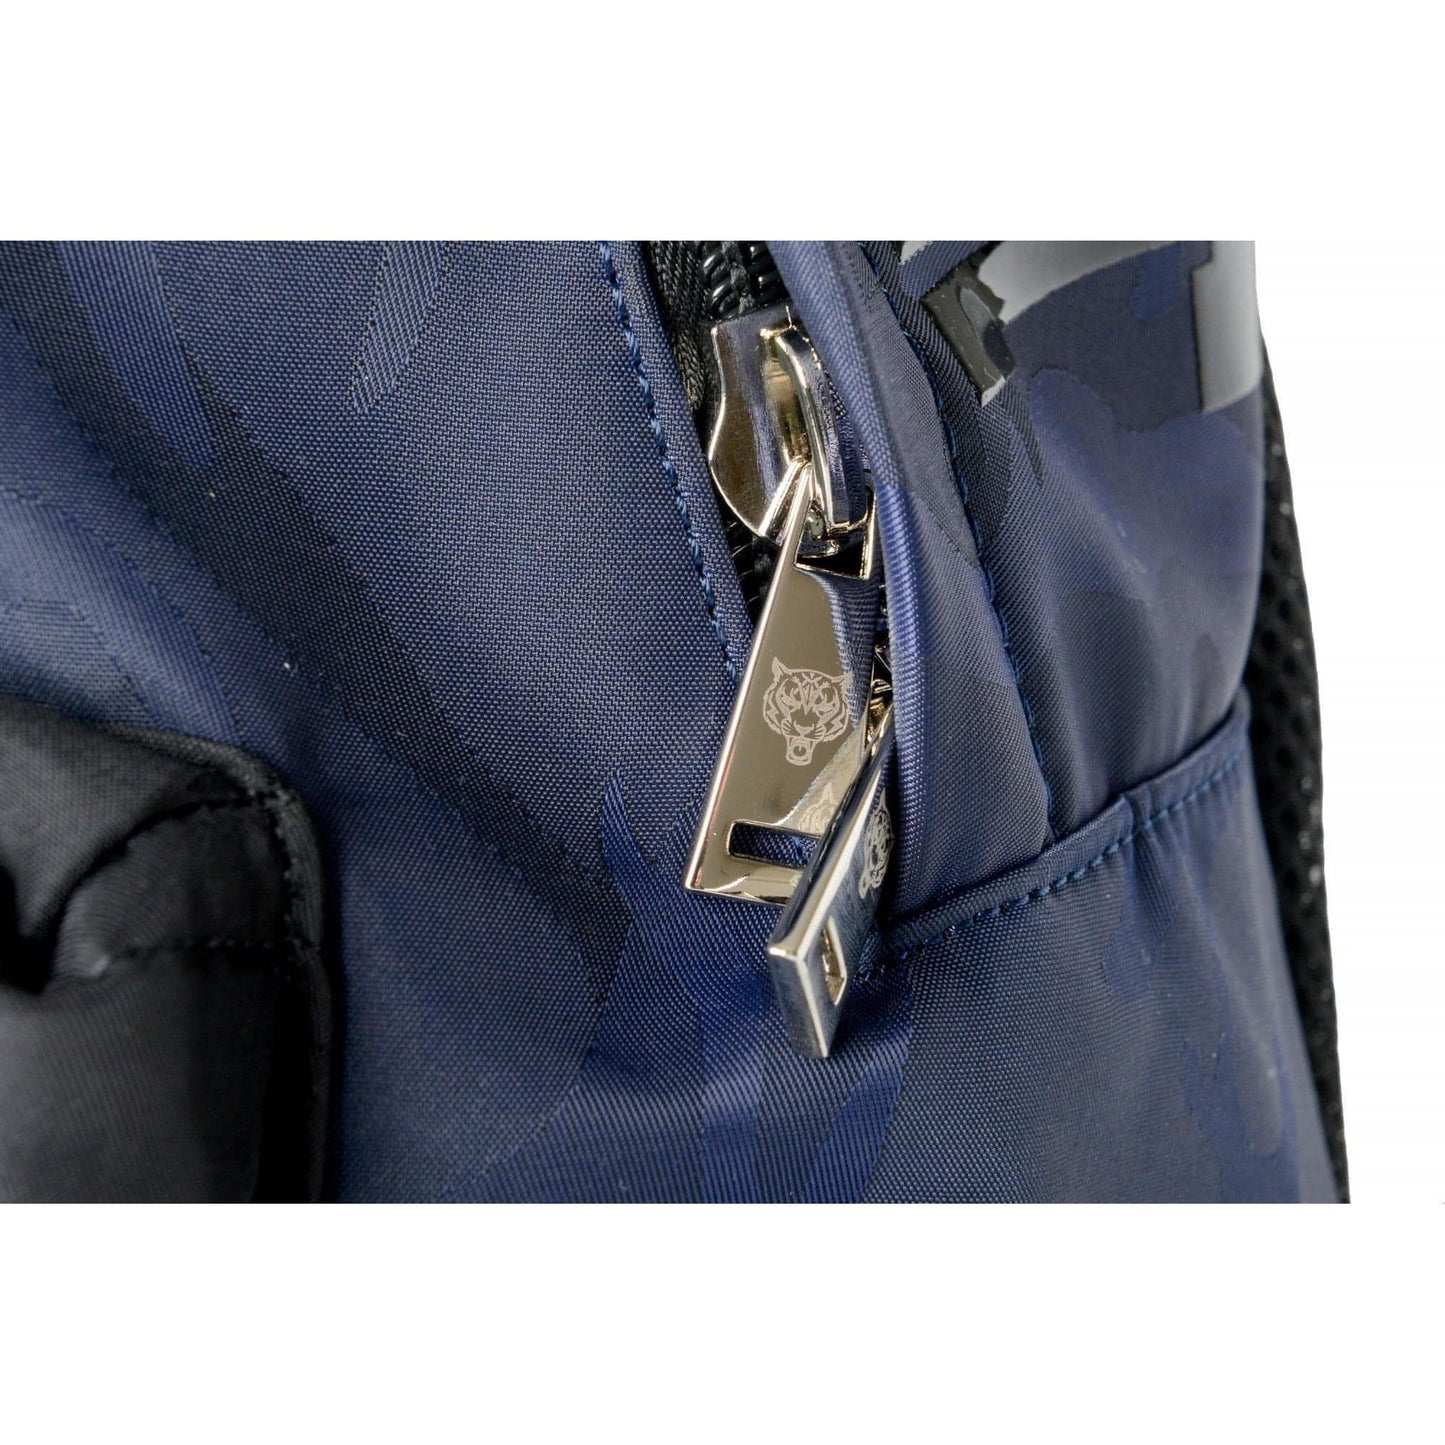 Plein Sport Unisex Military Print Navy "ZAINO EASTPAK" Backpack - Brandat Outlet